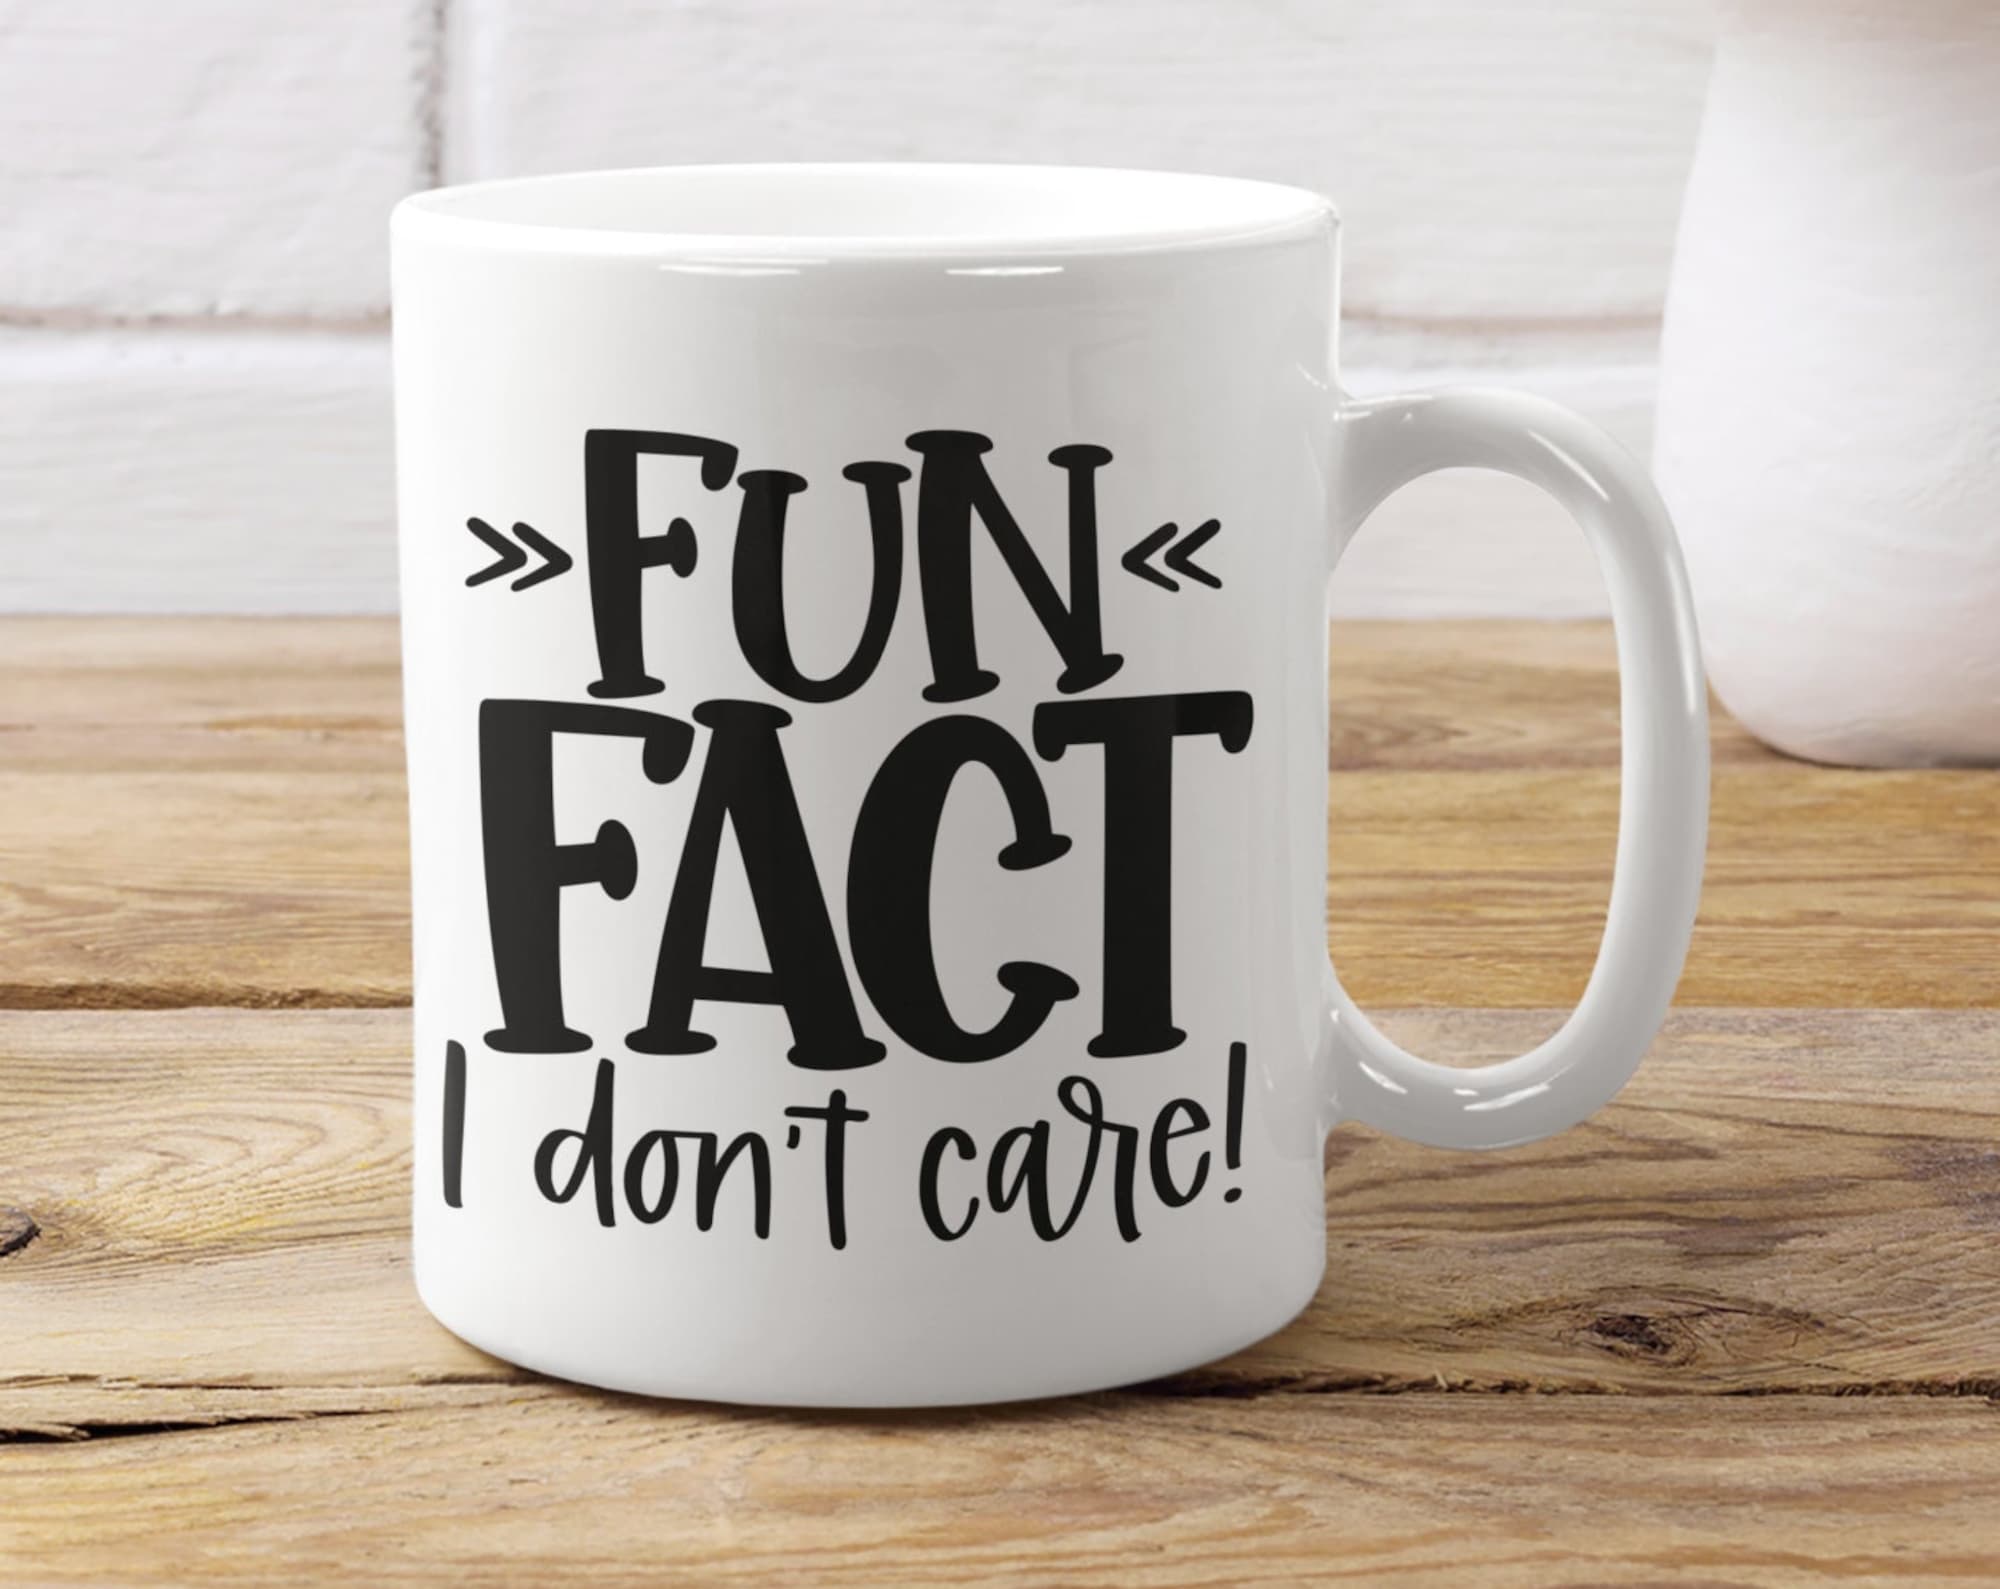 Fun Fact I don't care sarcastic mug